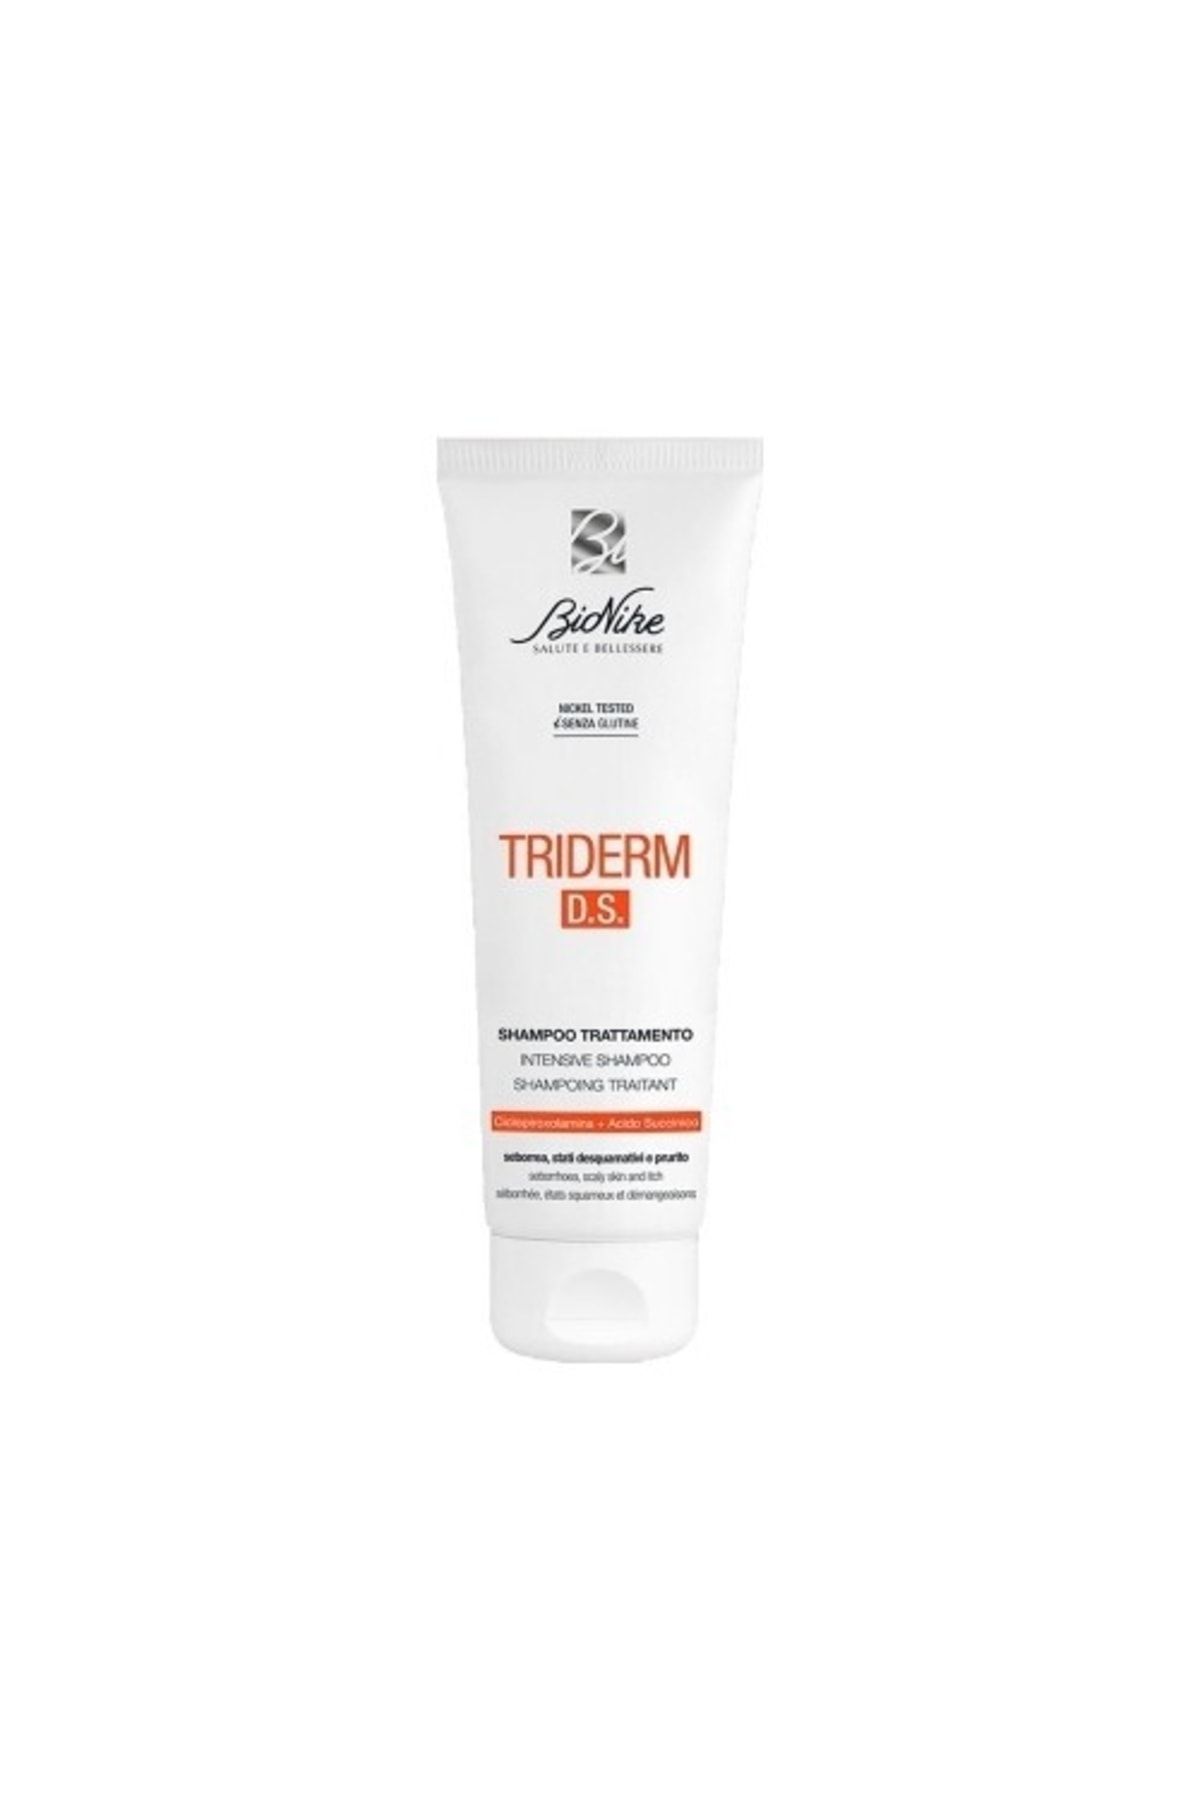 BioNike Triderm D.s. Intensive Shampoo 125 ml